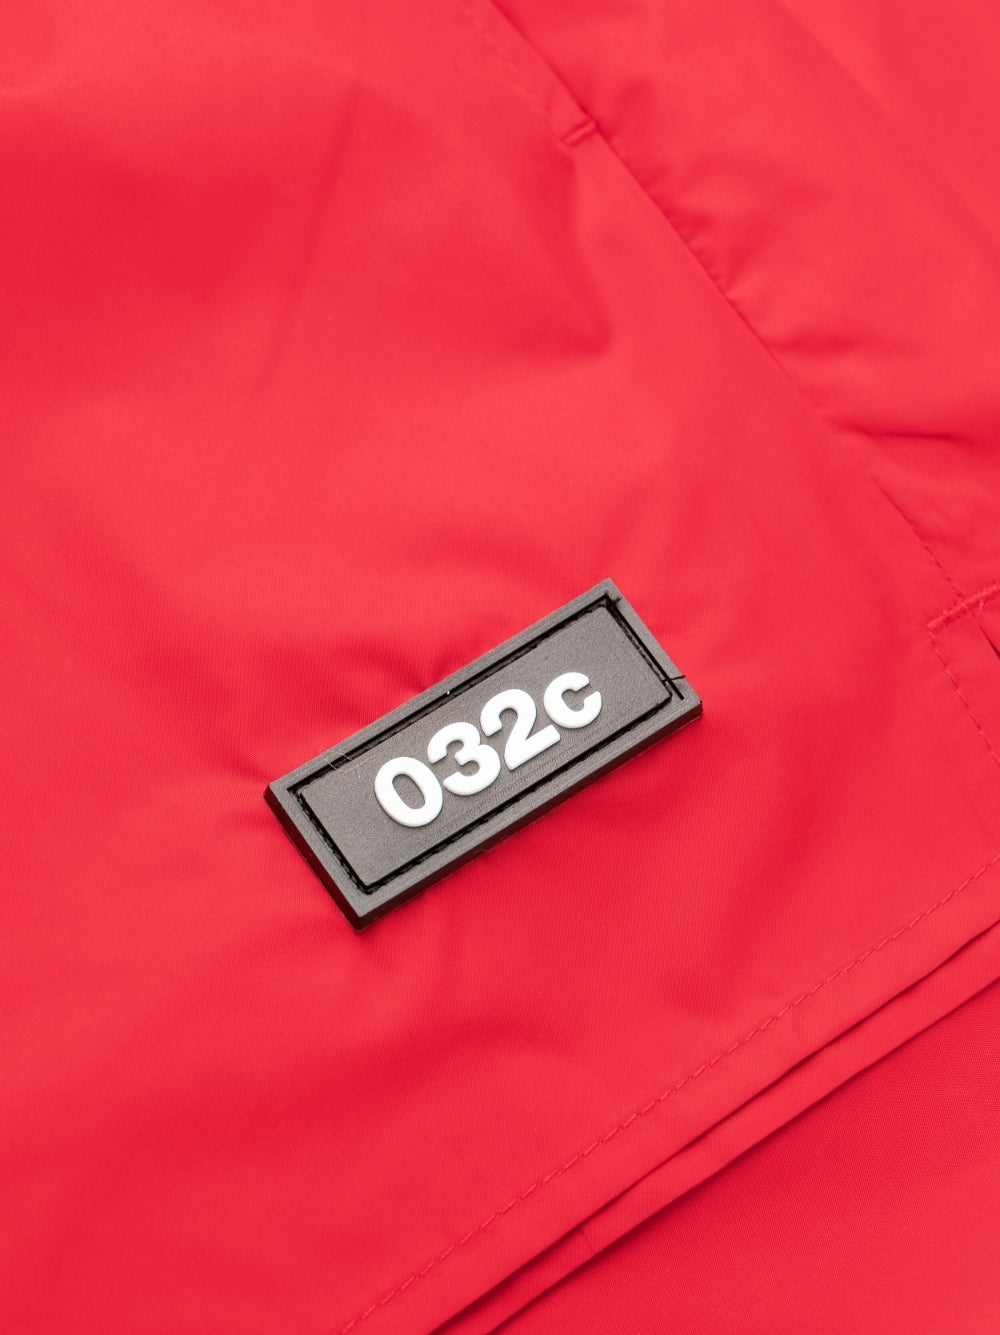 032C 032C Sea clothing Red